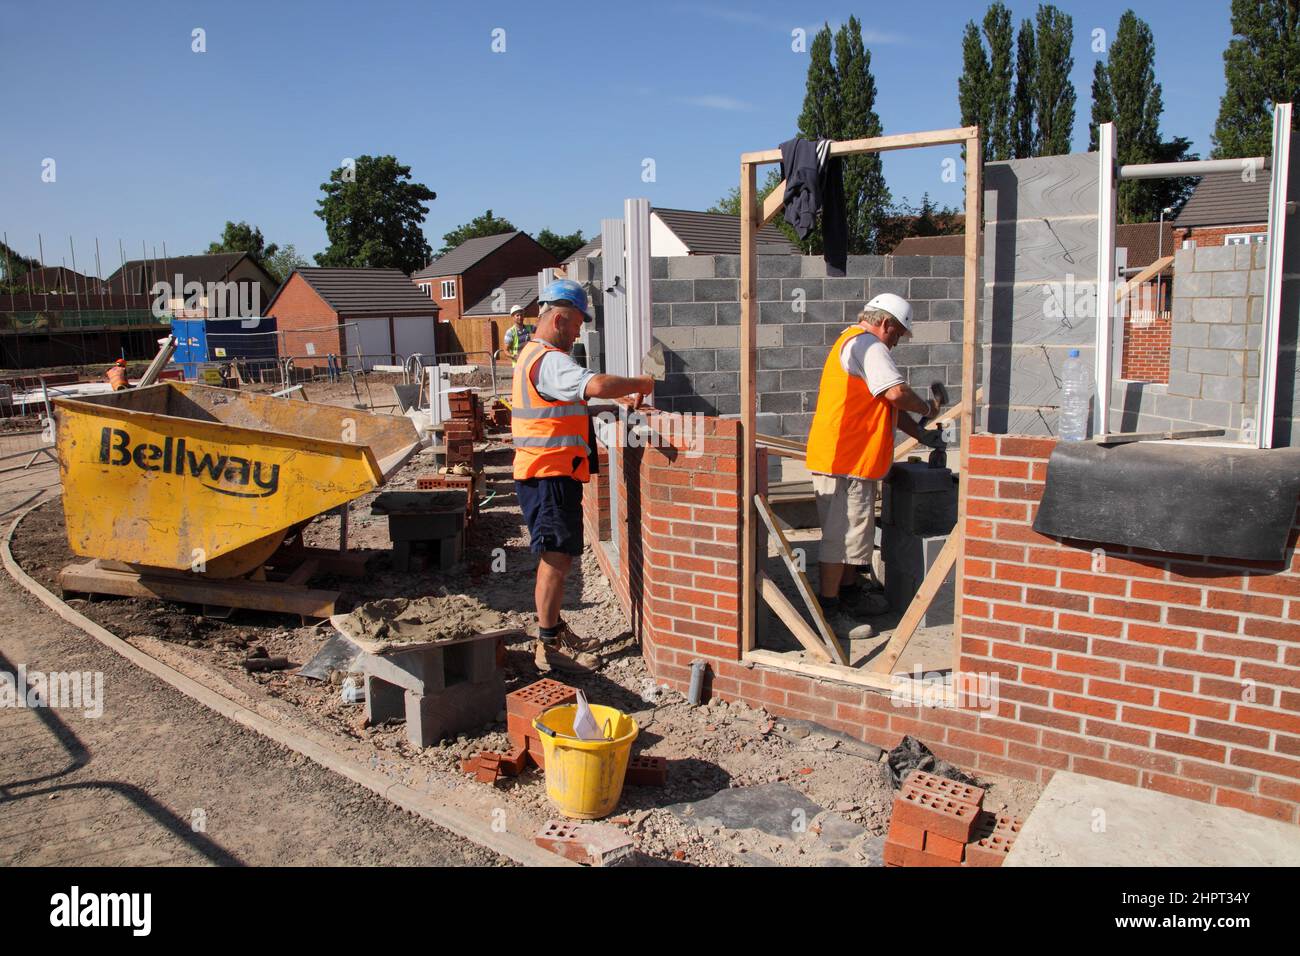 Des constructeurs et des couches de briques travaillent sur un site de construction Bellway Homes dans les West Midlands, en Angleterre, au Royaume-Uni Banque D'Images